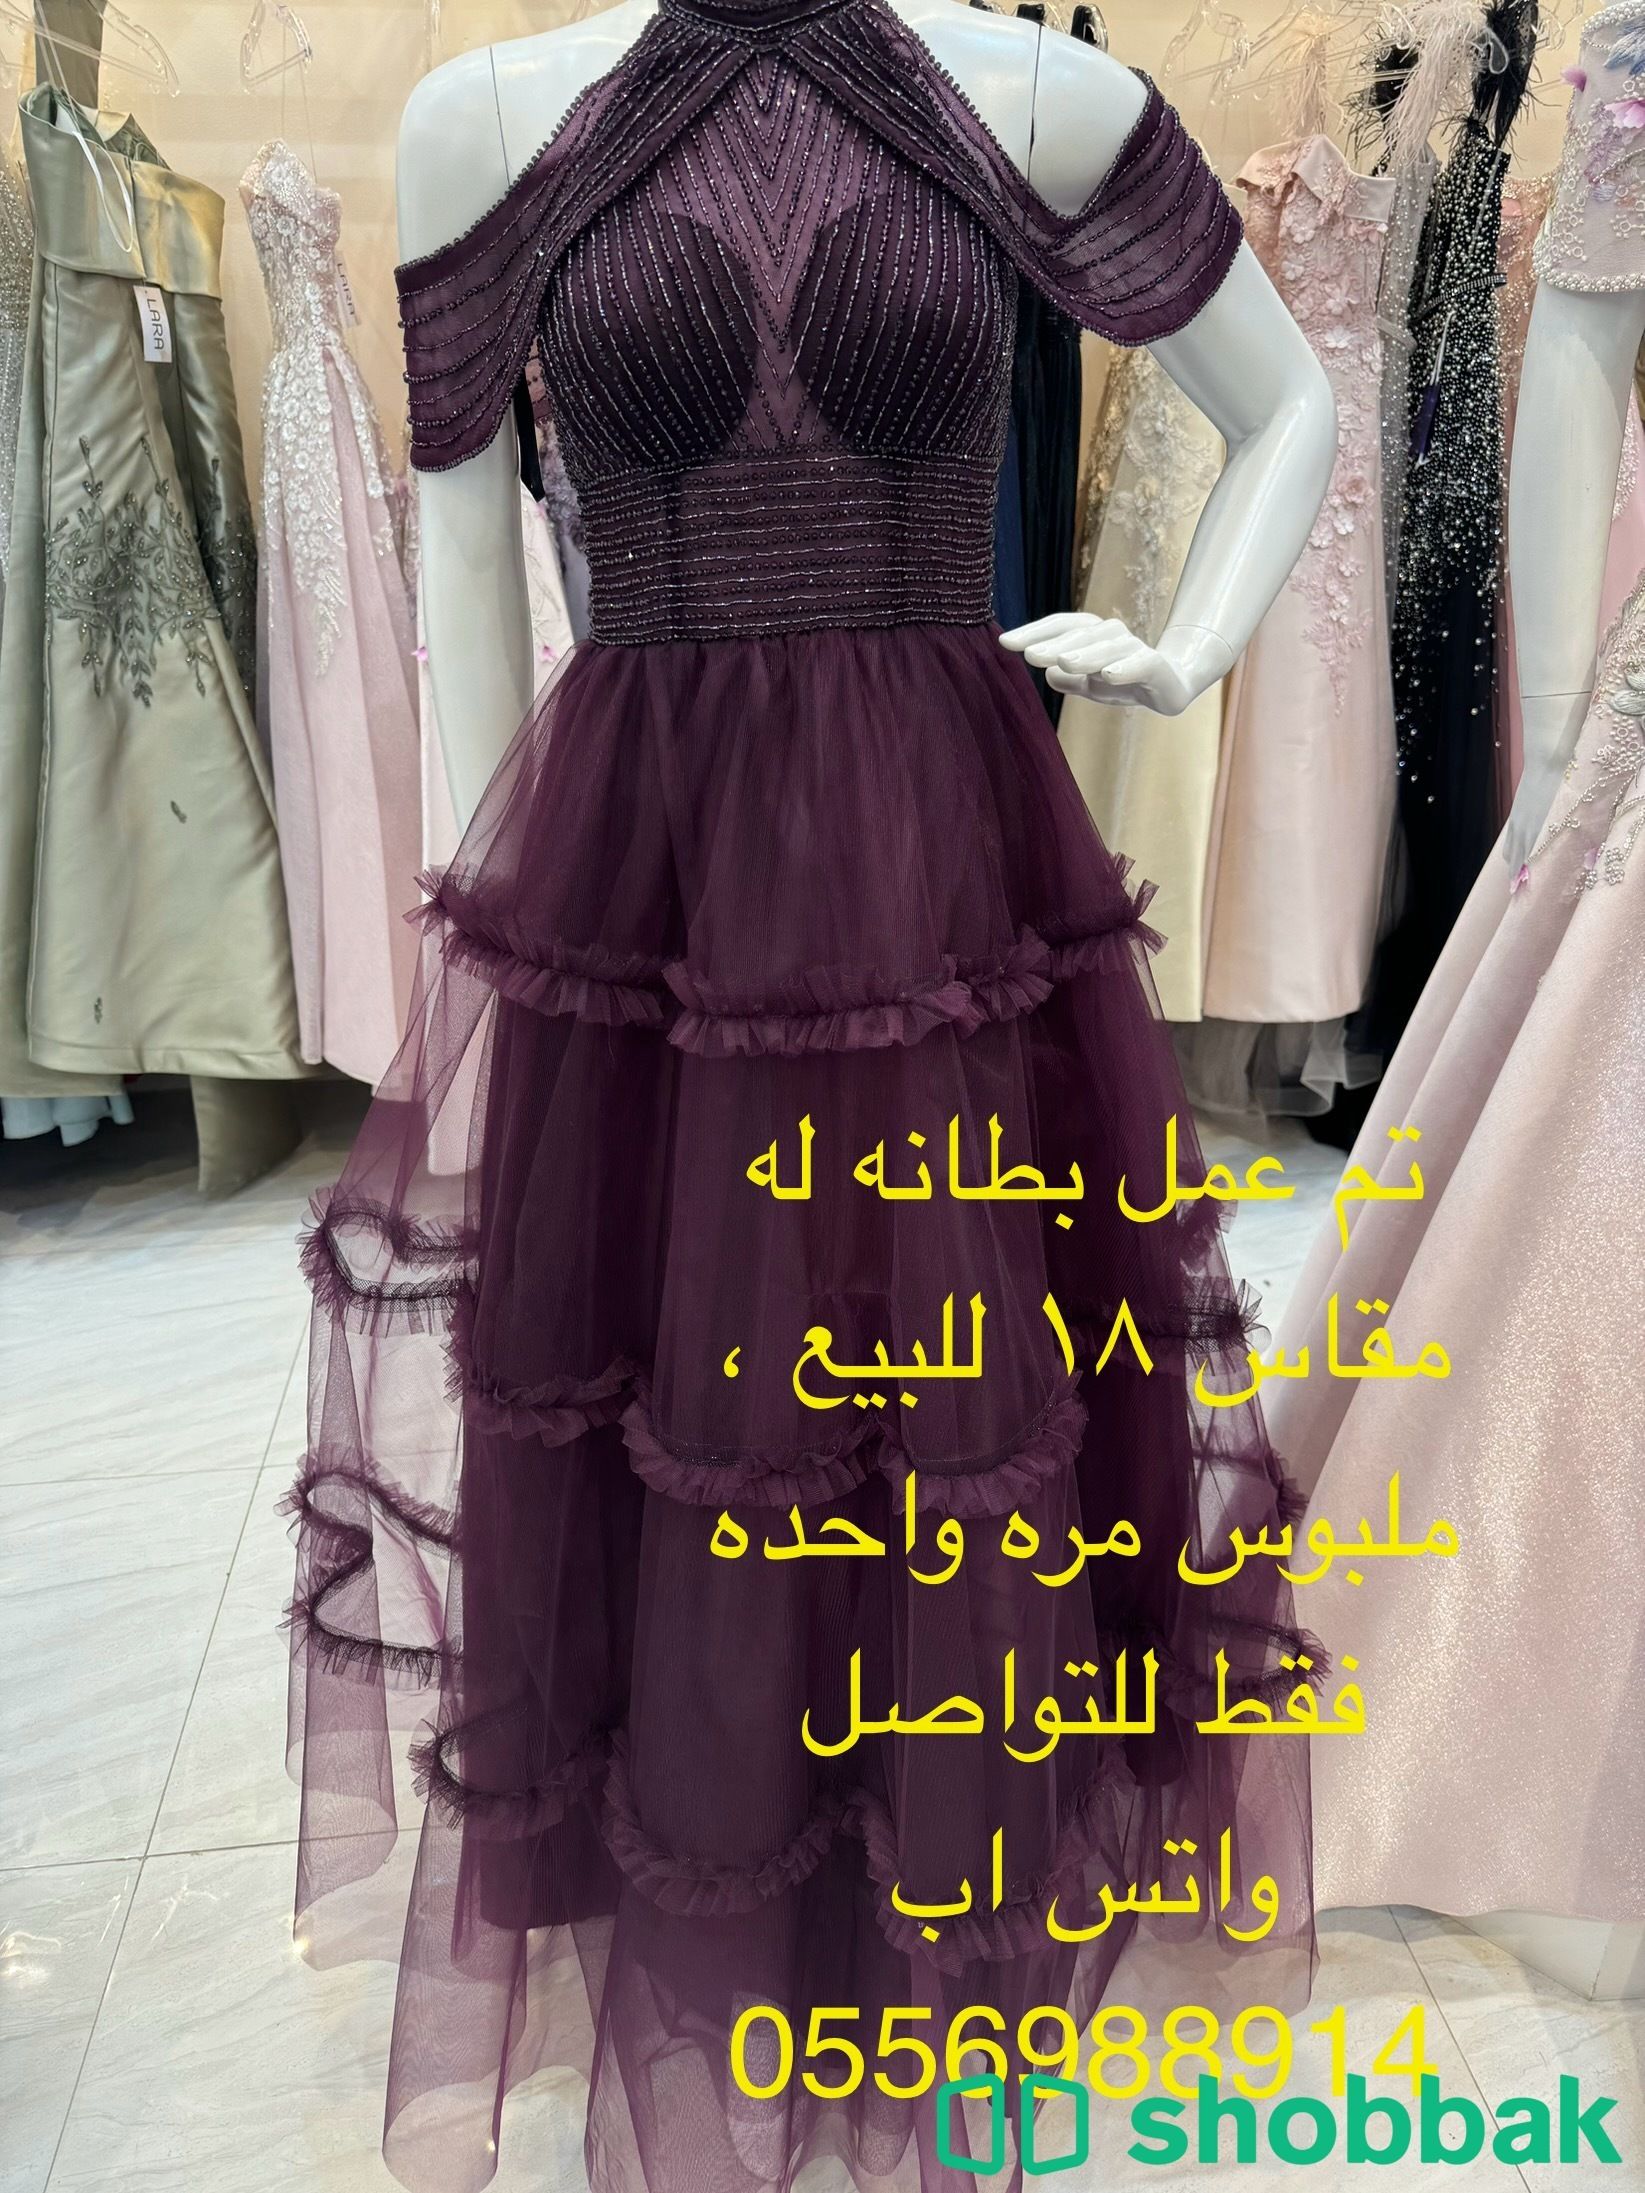 بيع فستان سهره Shobbak Saudi Arabia